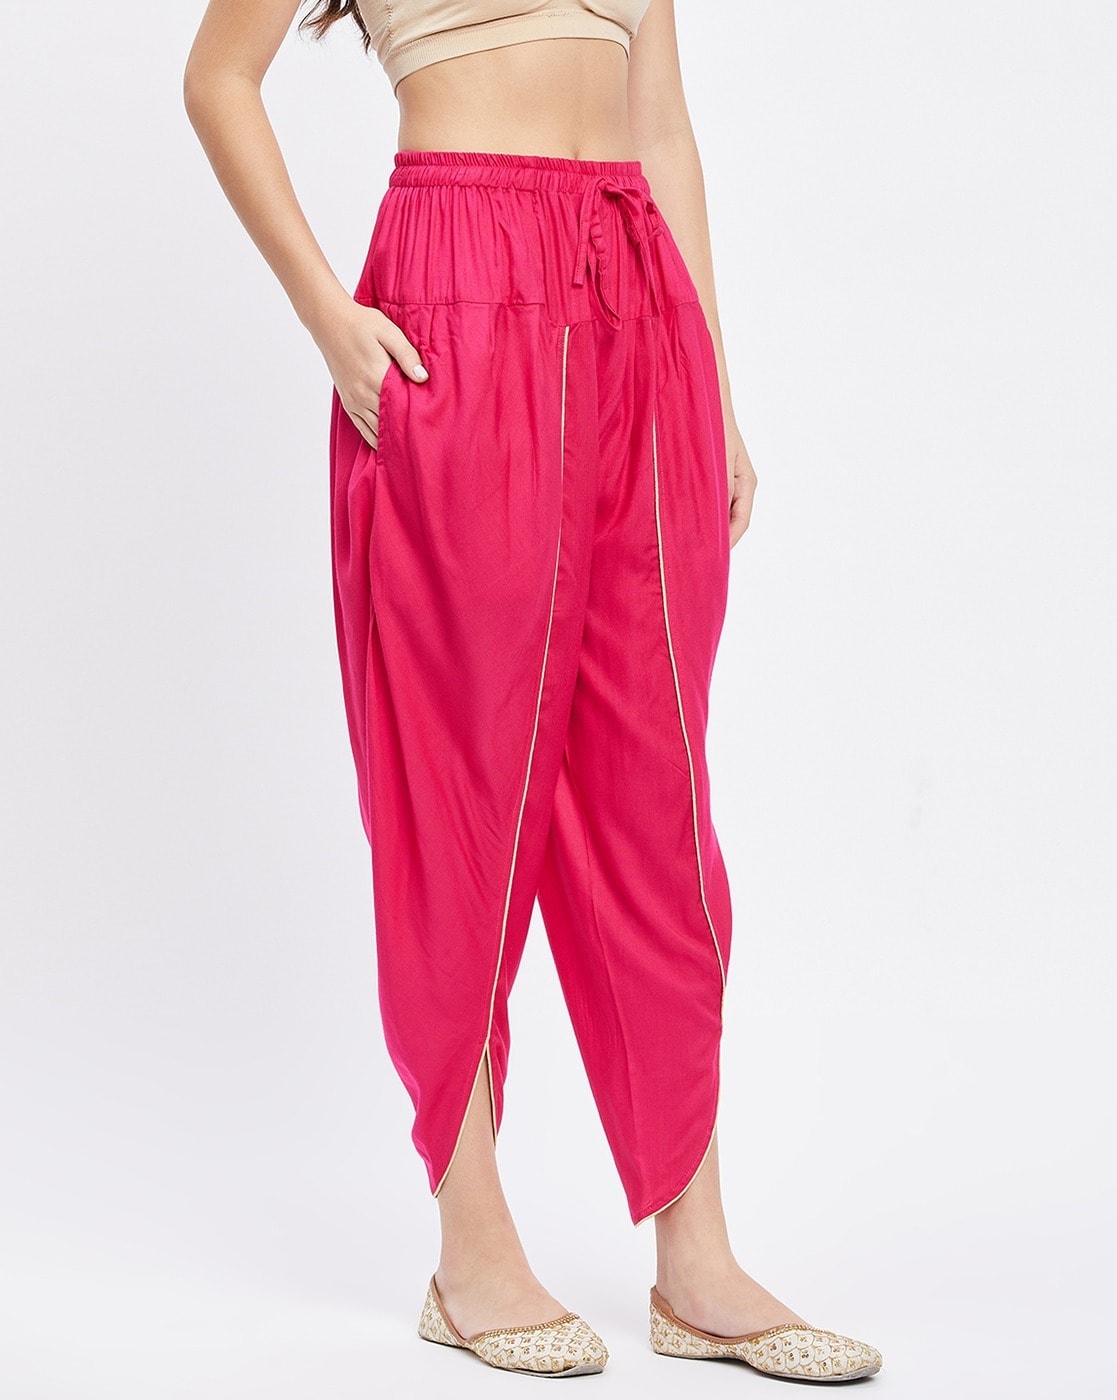 Buy Pink Fusion Wear Sets for Women by Global Desi Online  Ajiocom